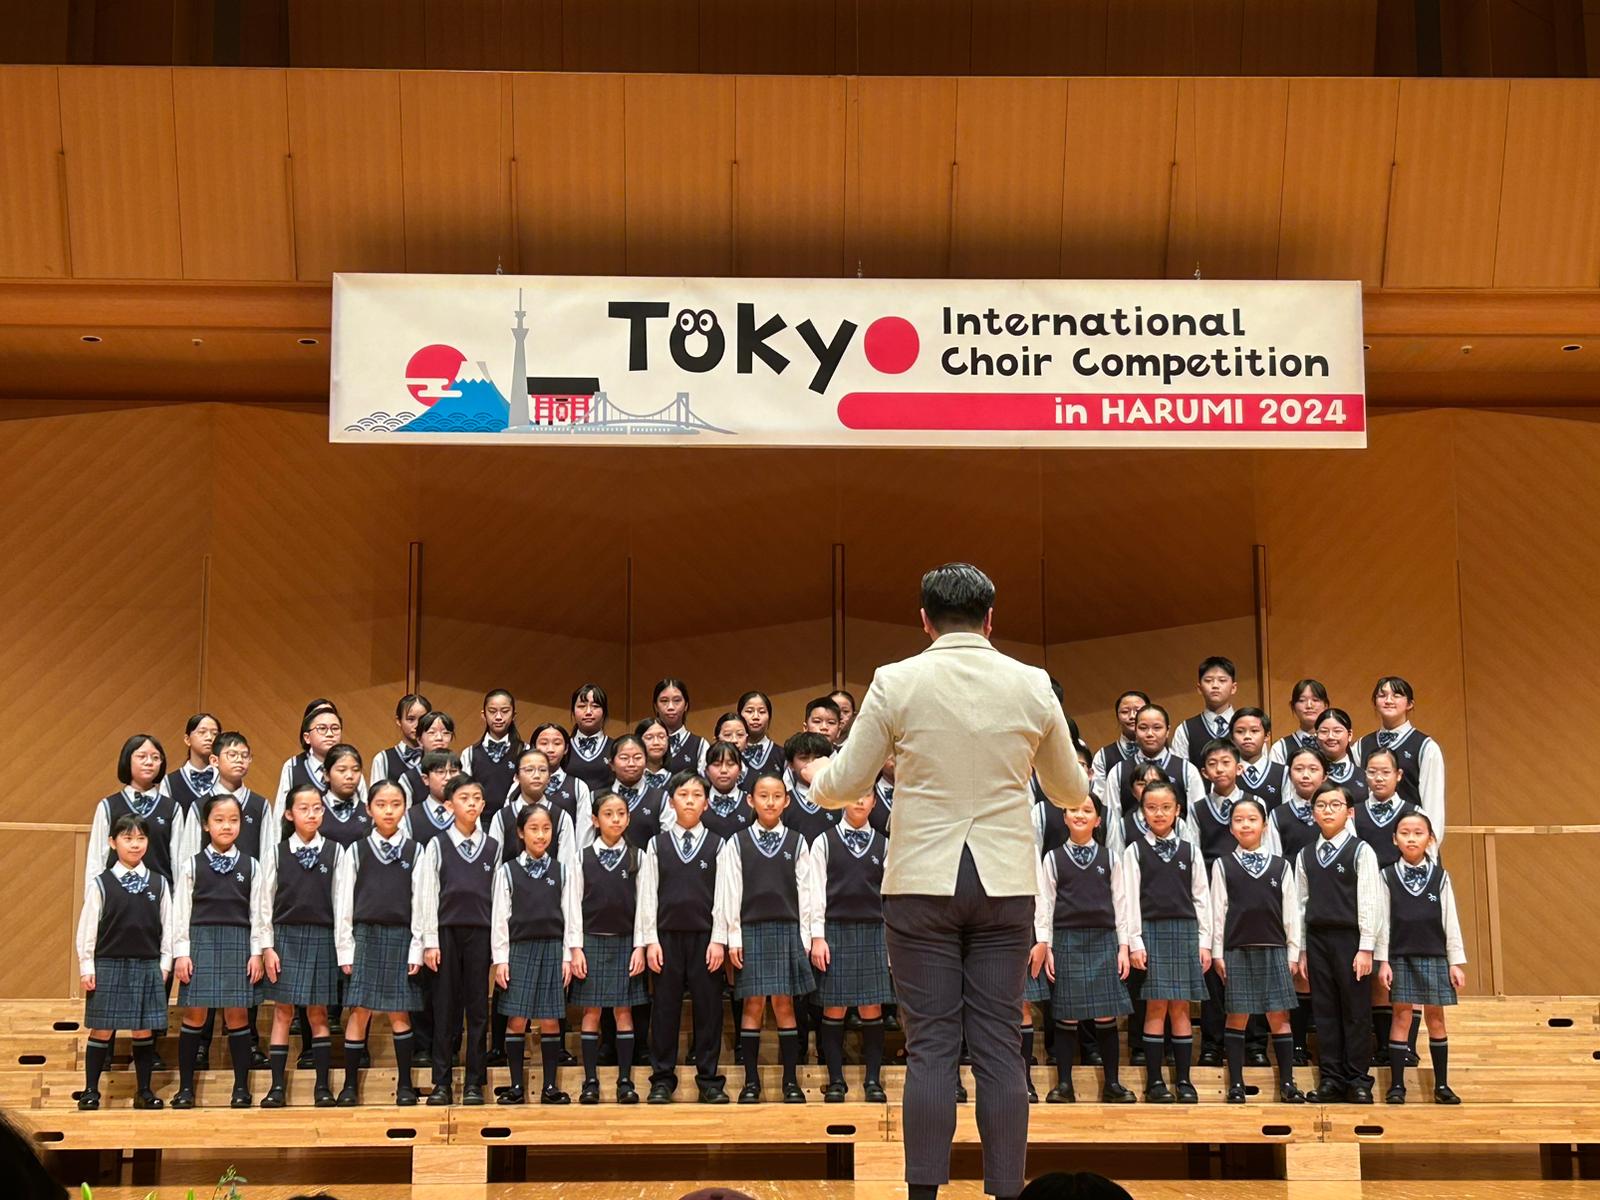 恭喜本校高級組合唱團於東京國際合唱大賽獲得冠軍!